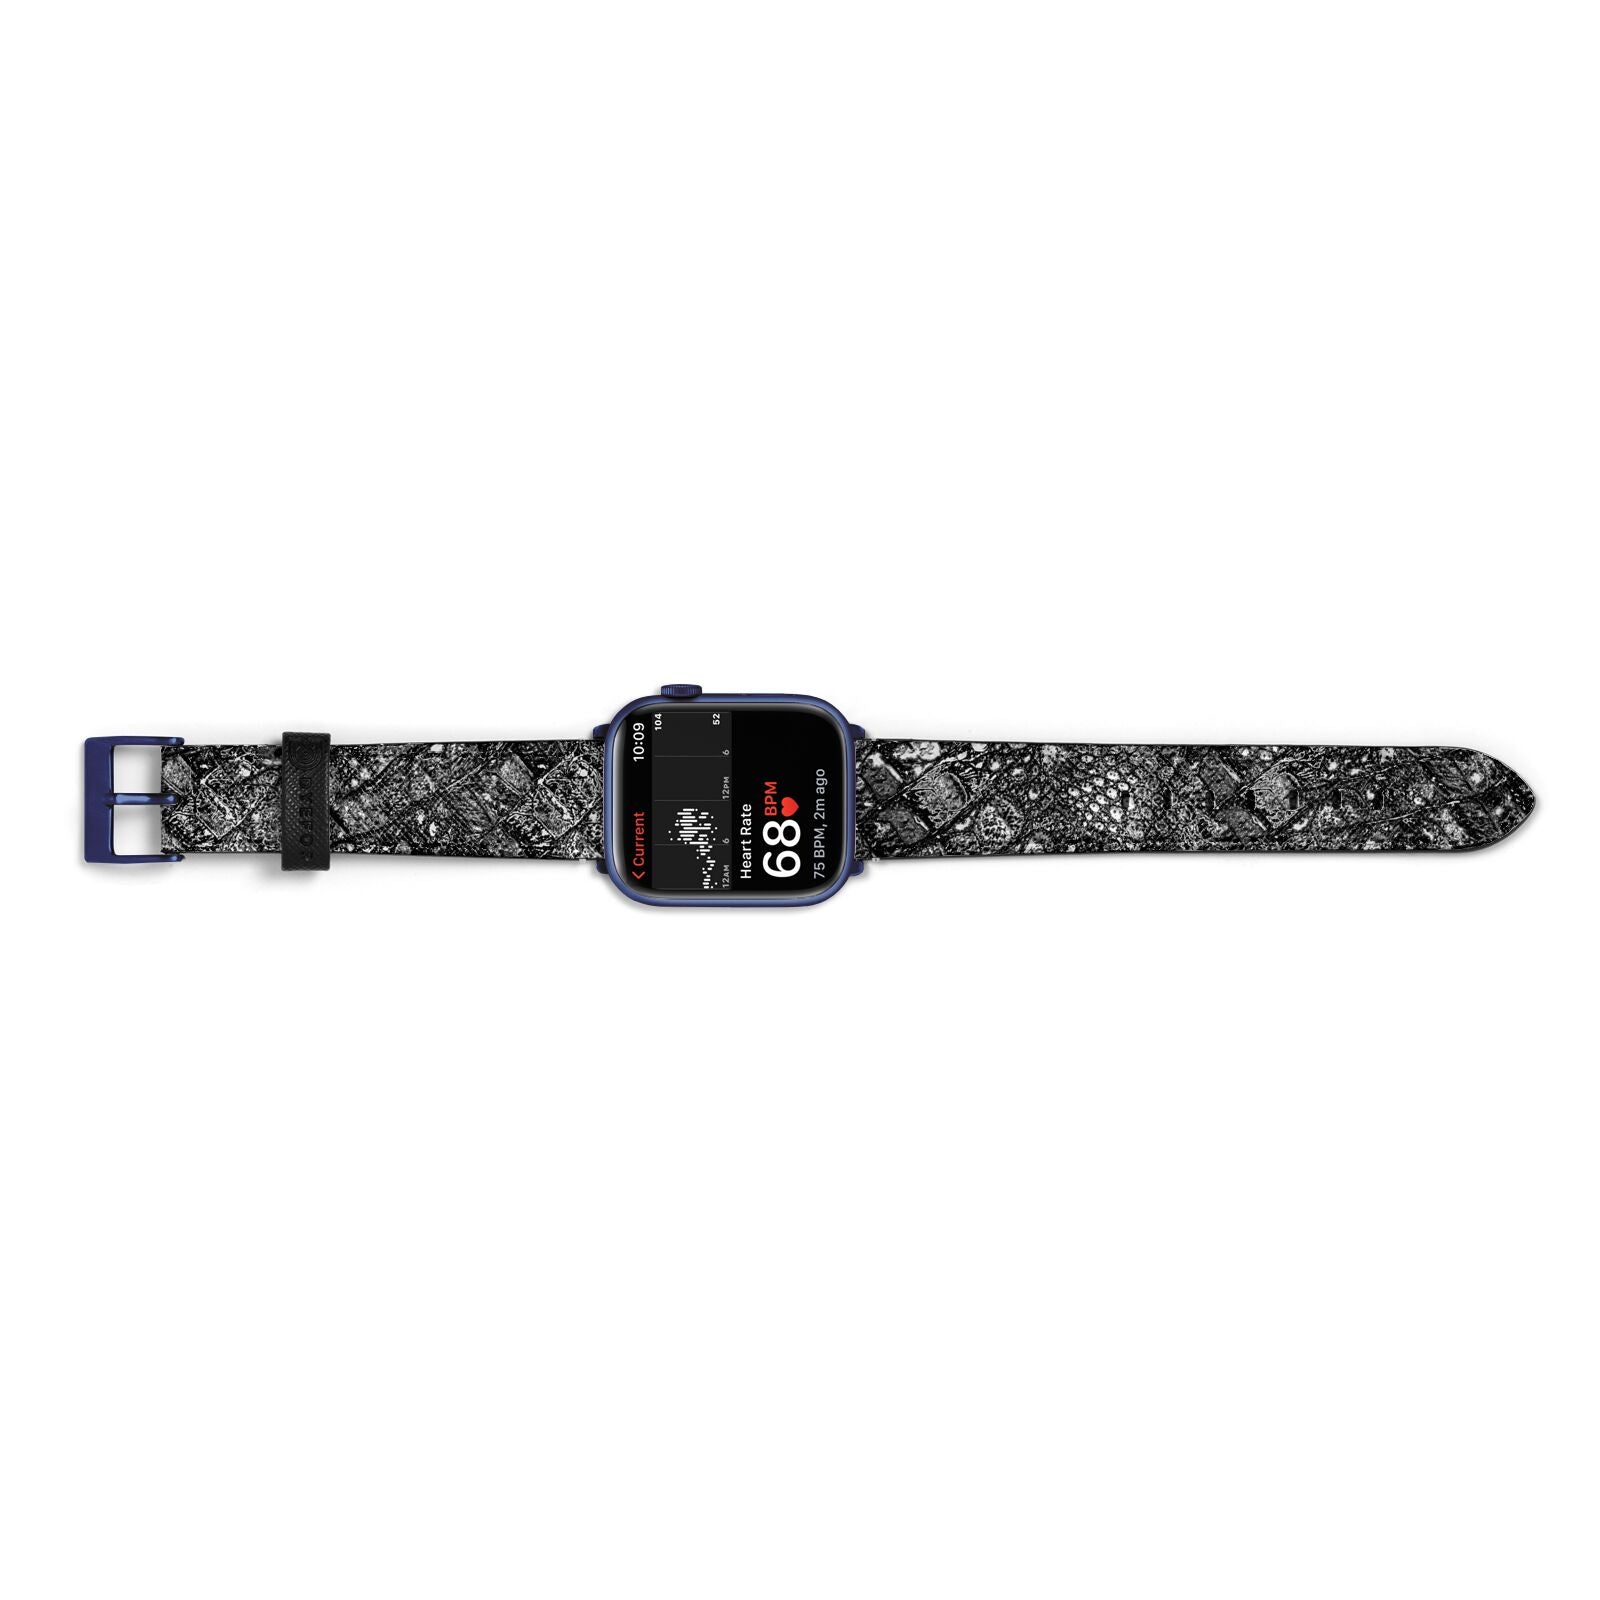 Snakeskin Design Apple Watch Strap Size 38mm Landscape Image Blue Hardware